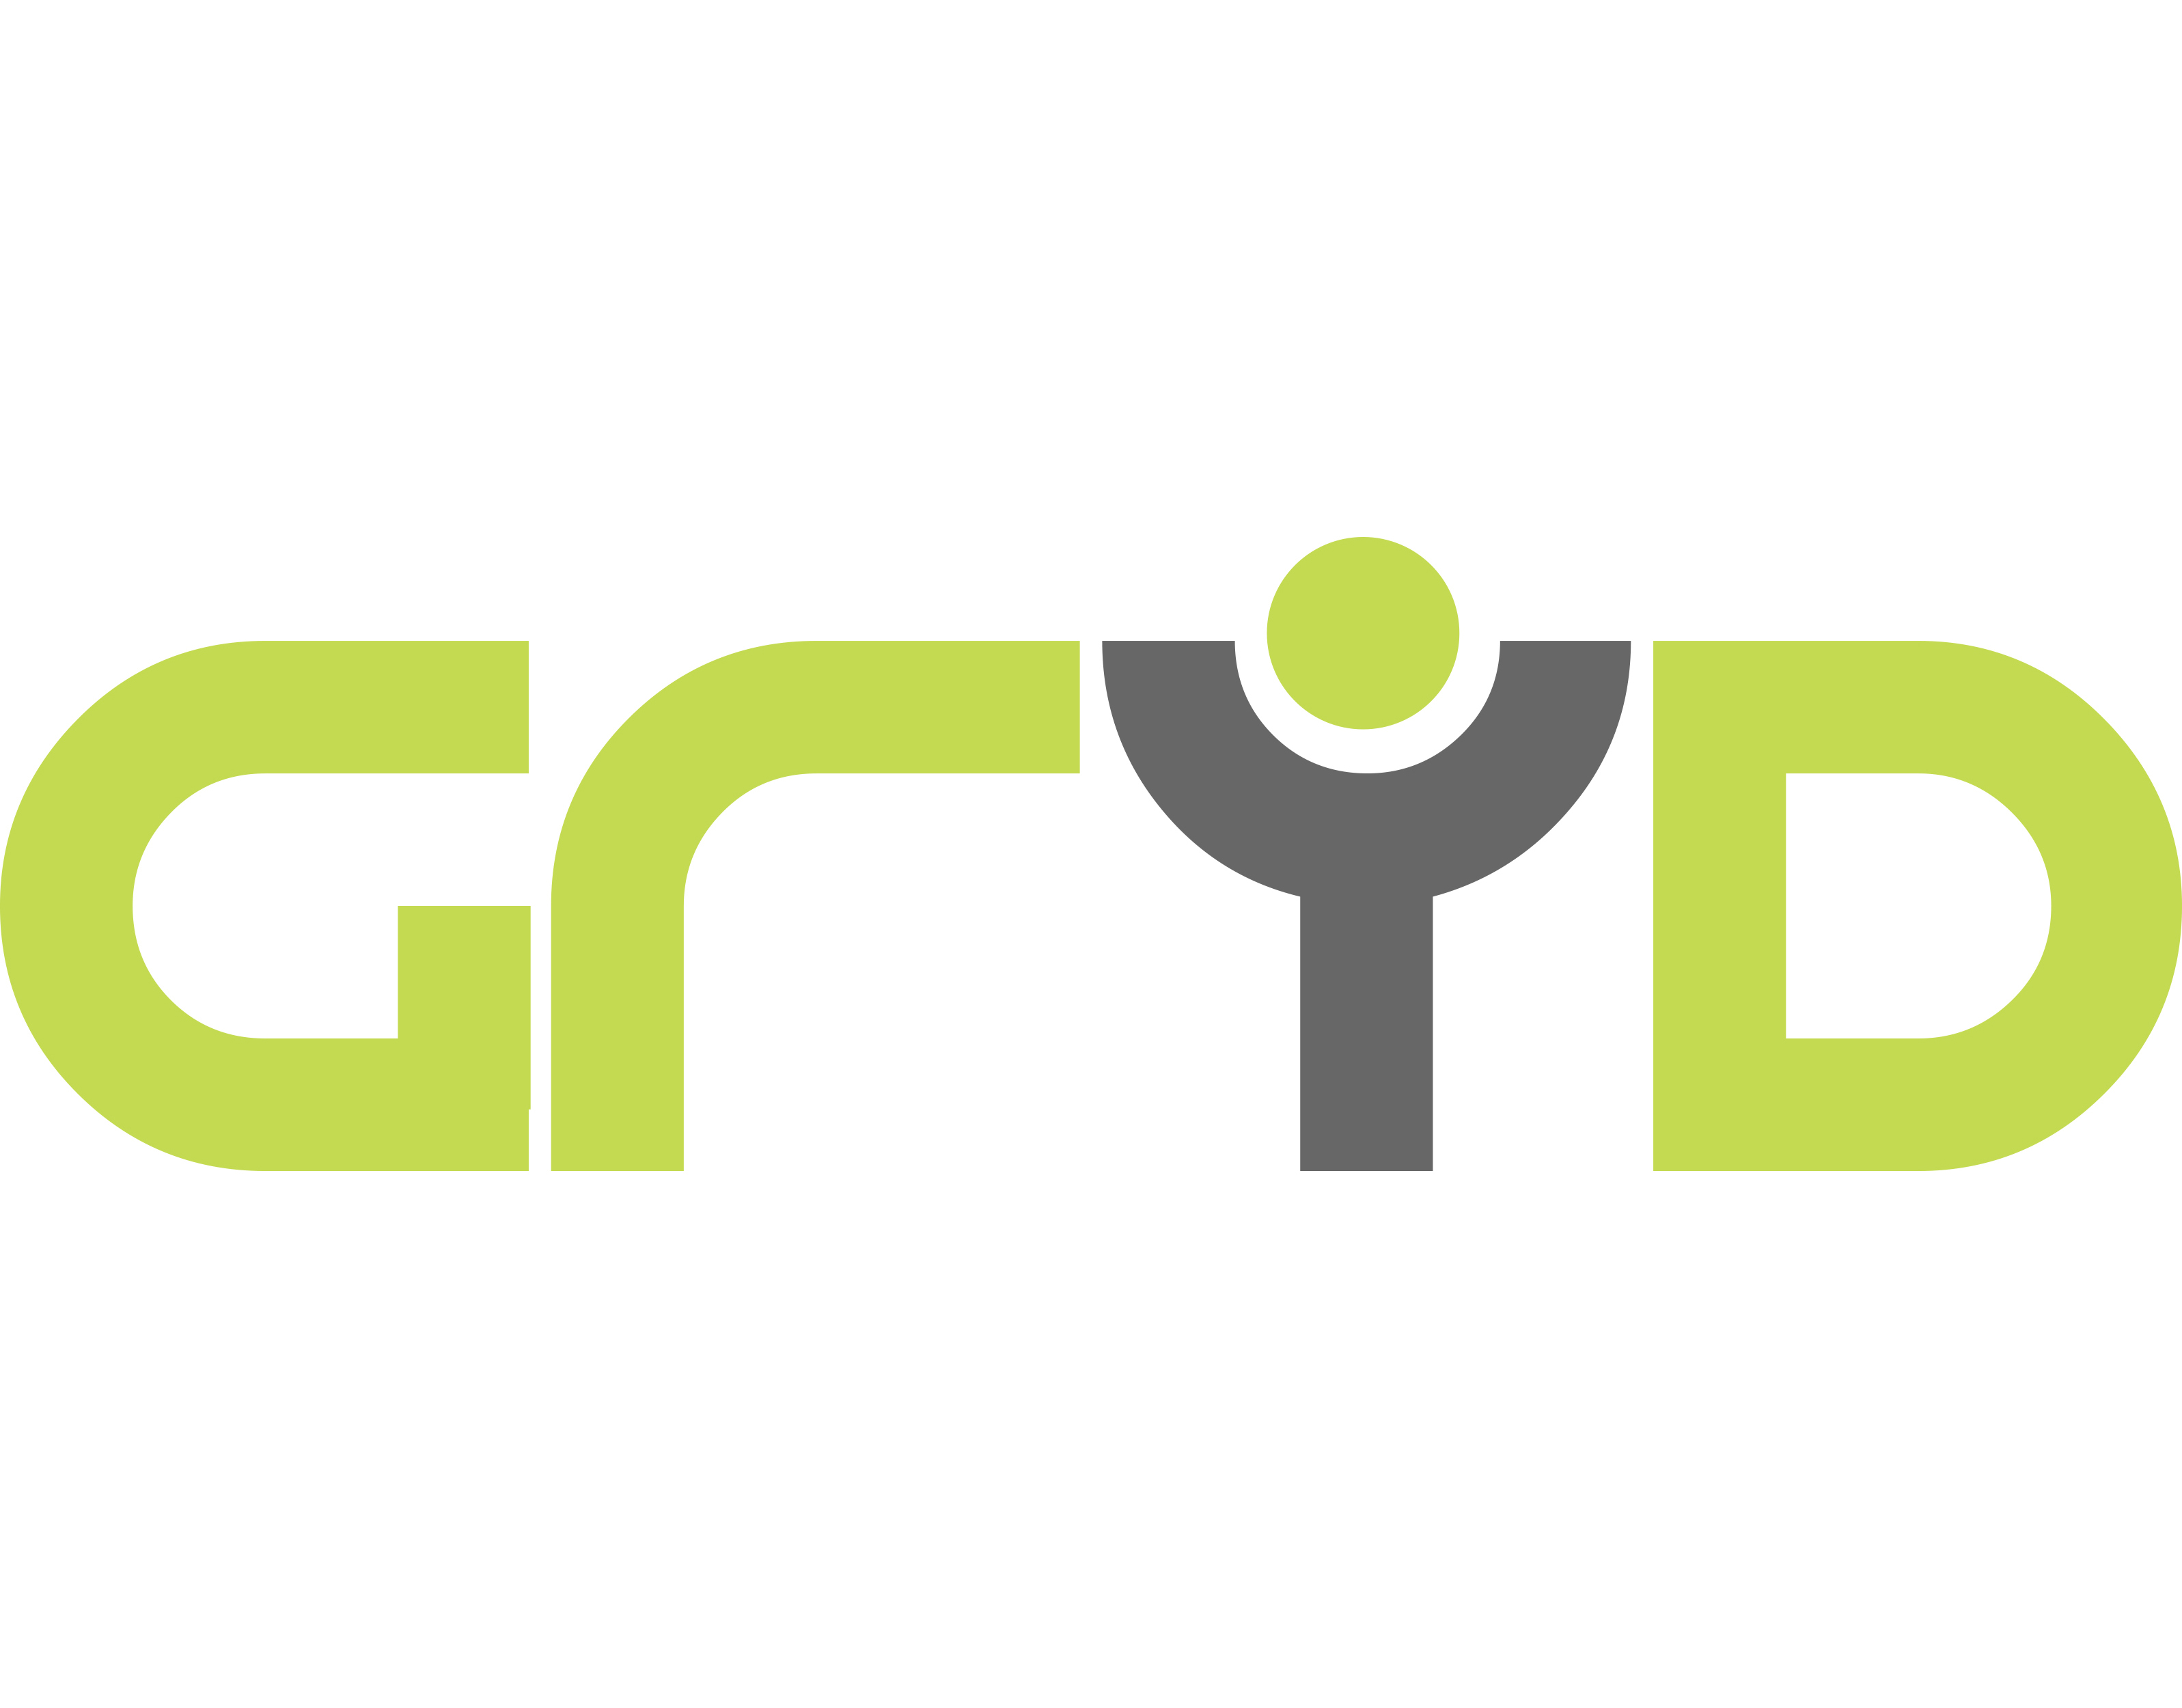 Gryd Ltd